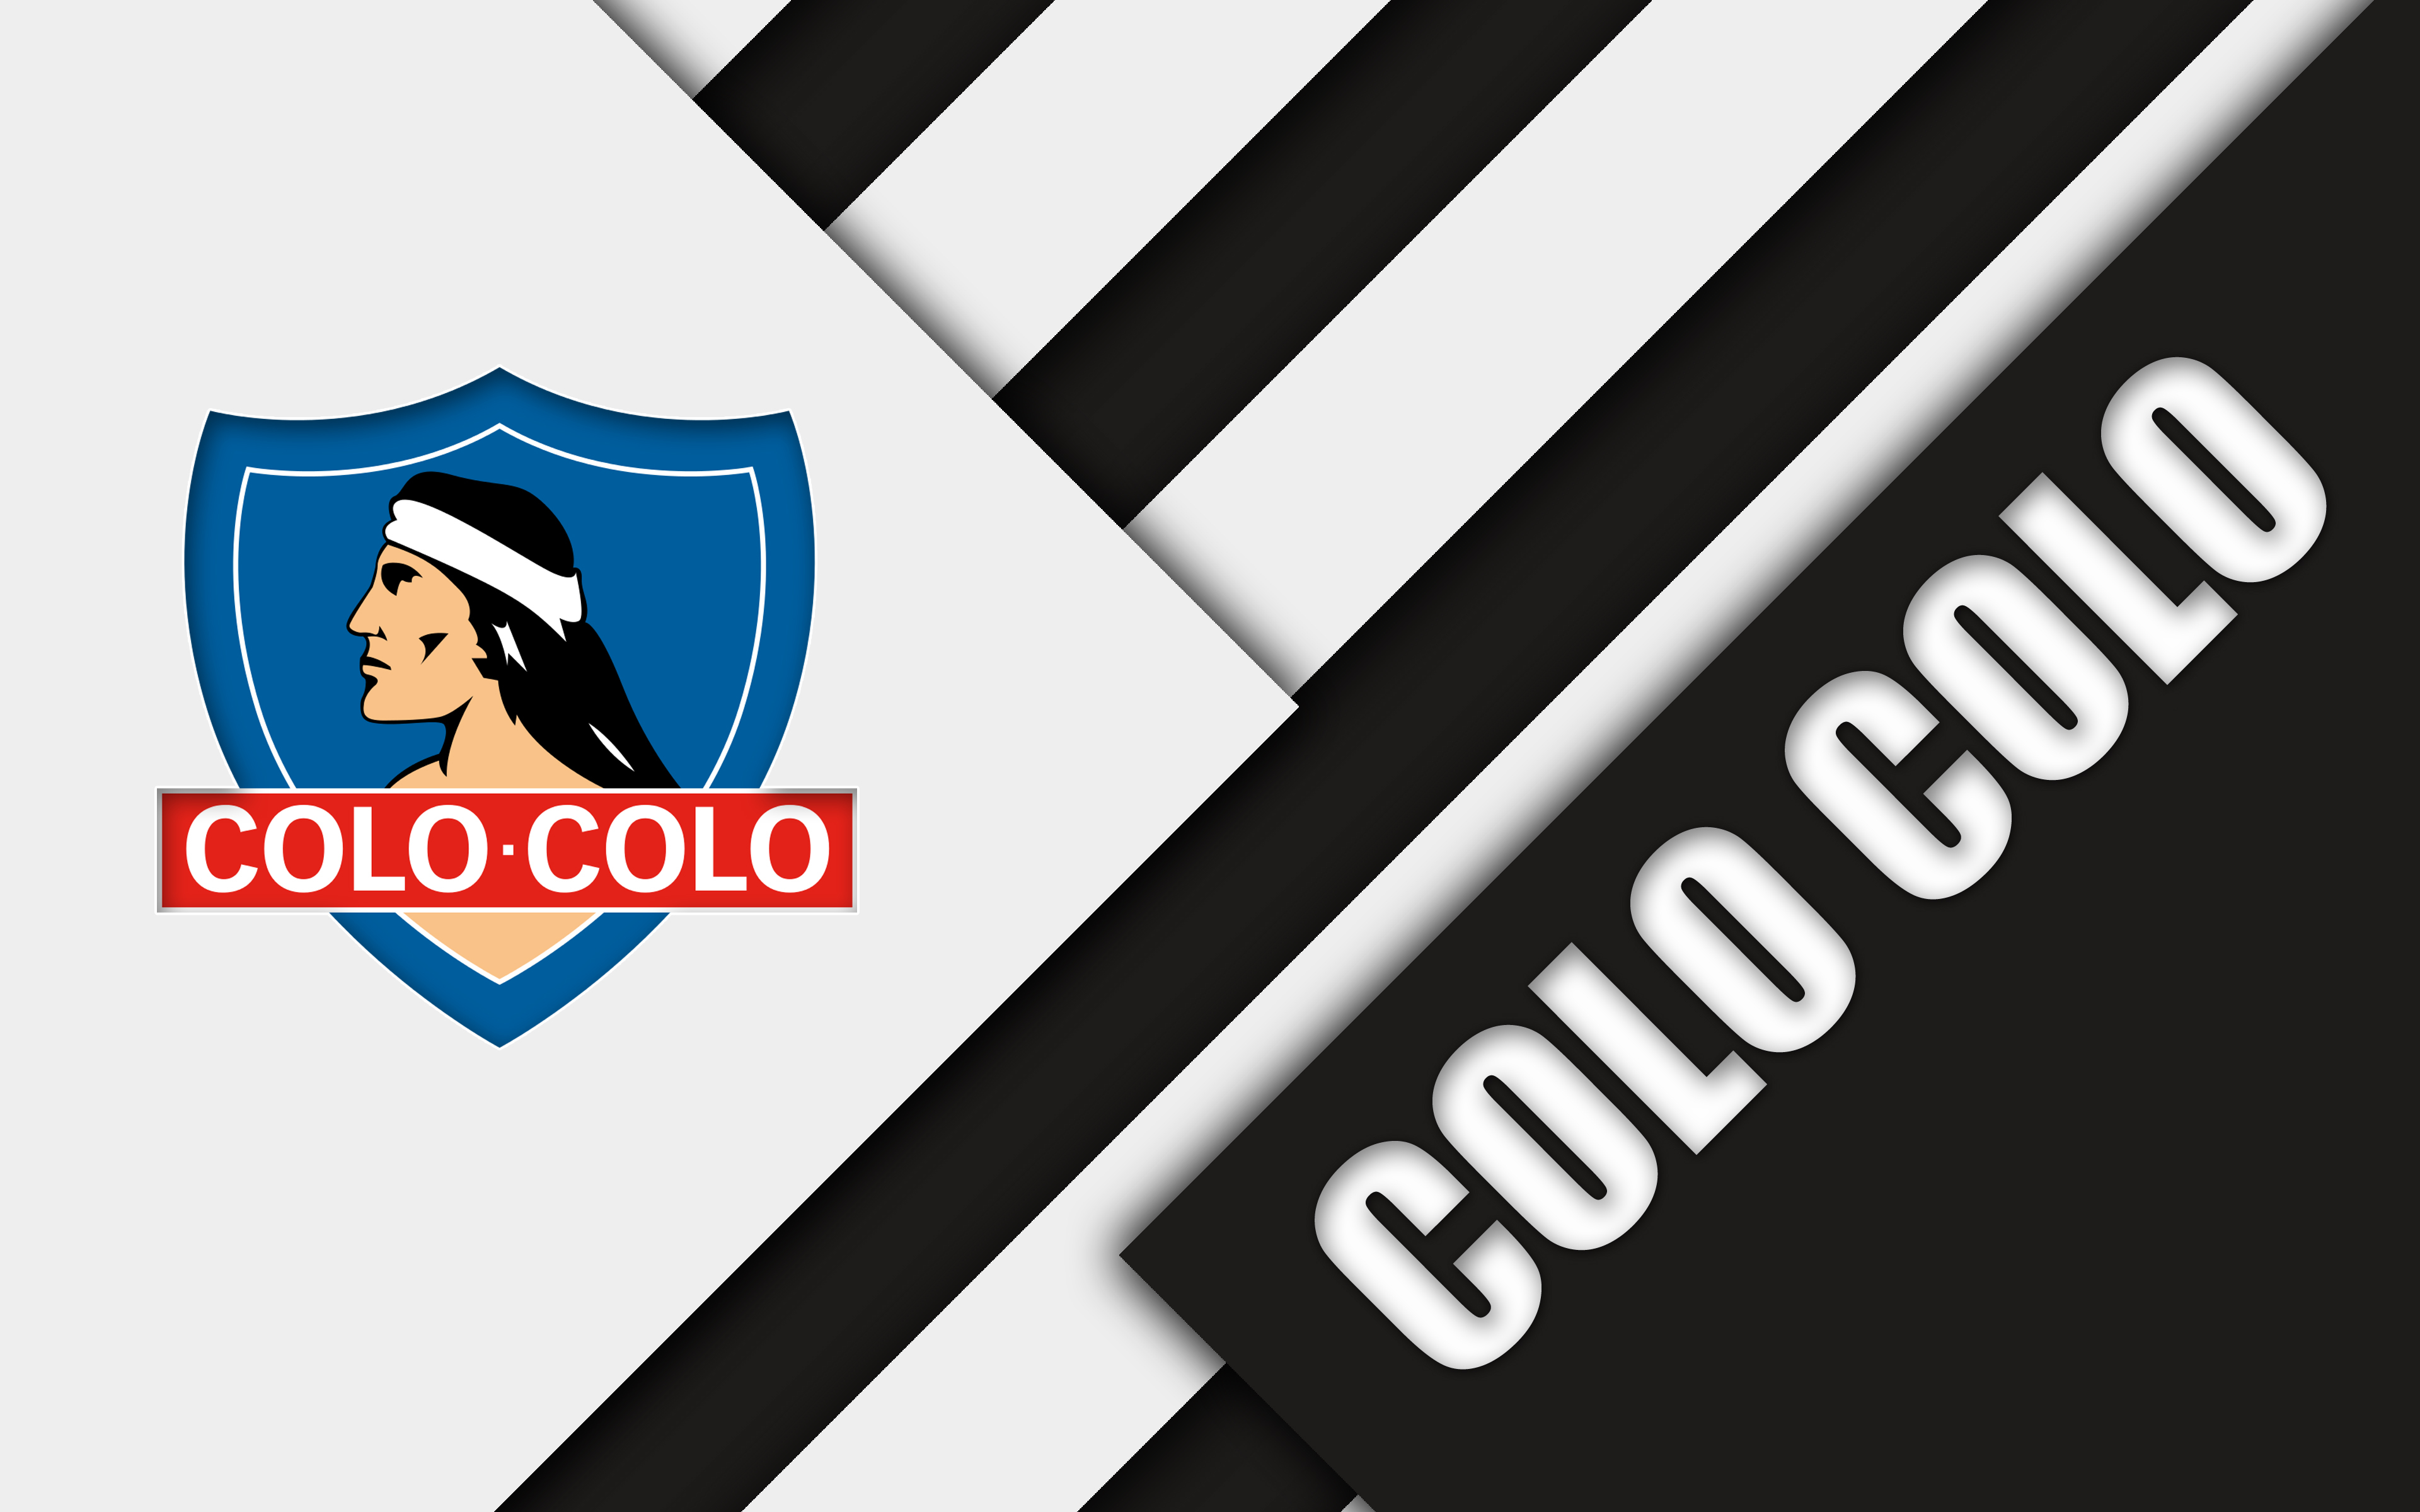 Colo Colo 4k Ultra HD Wallpaper